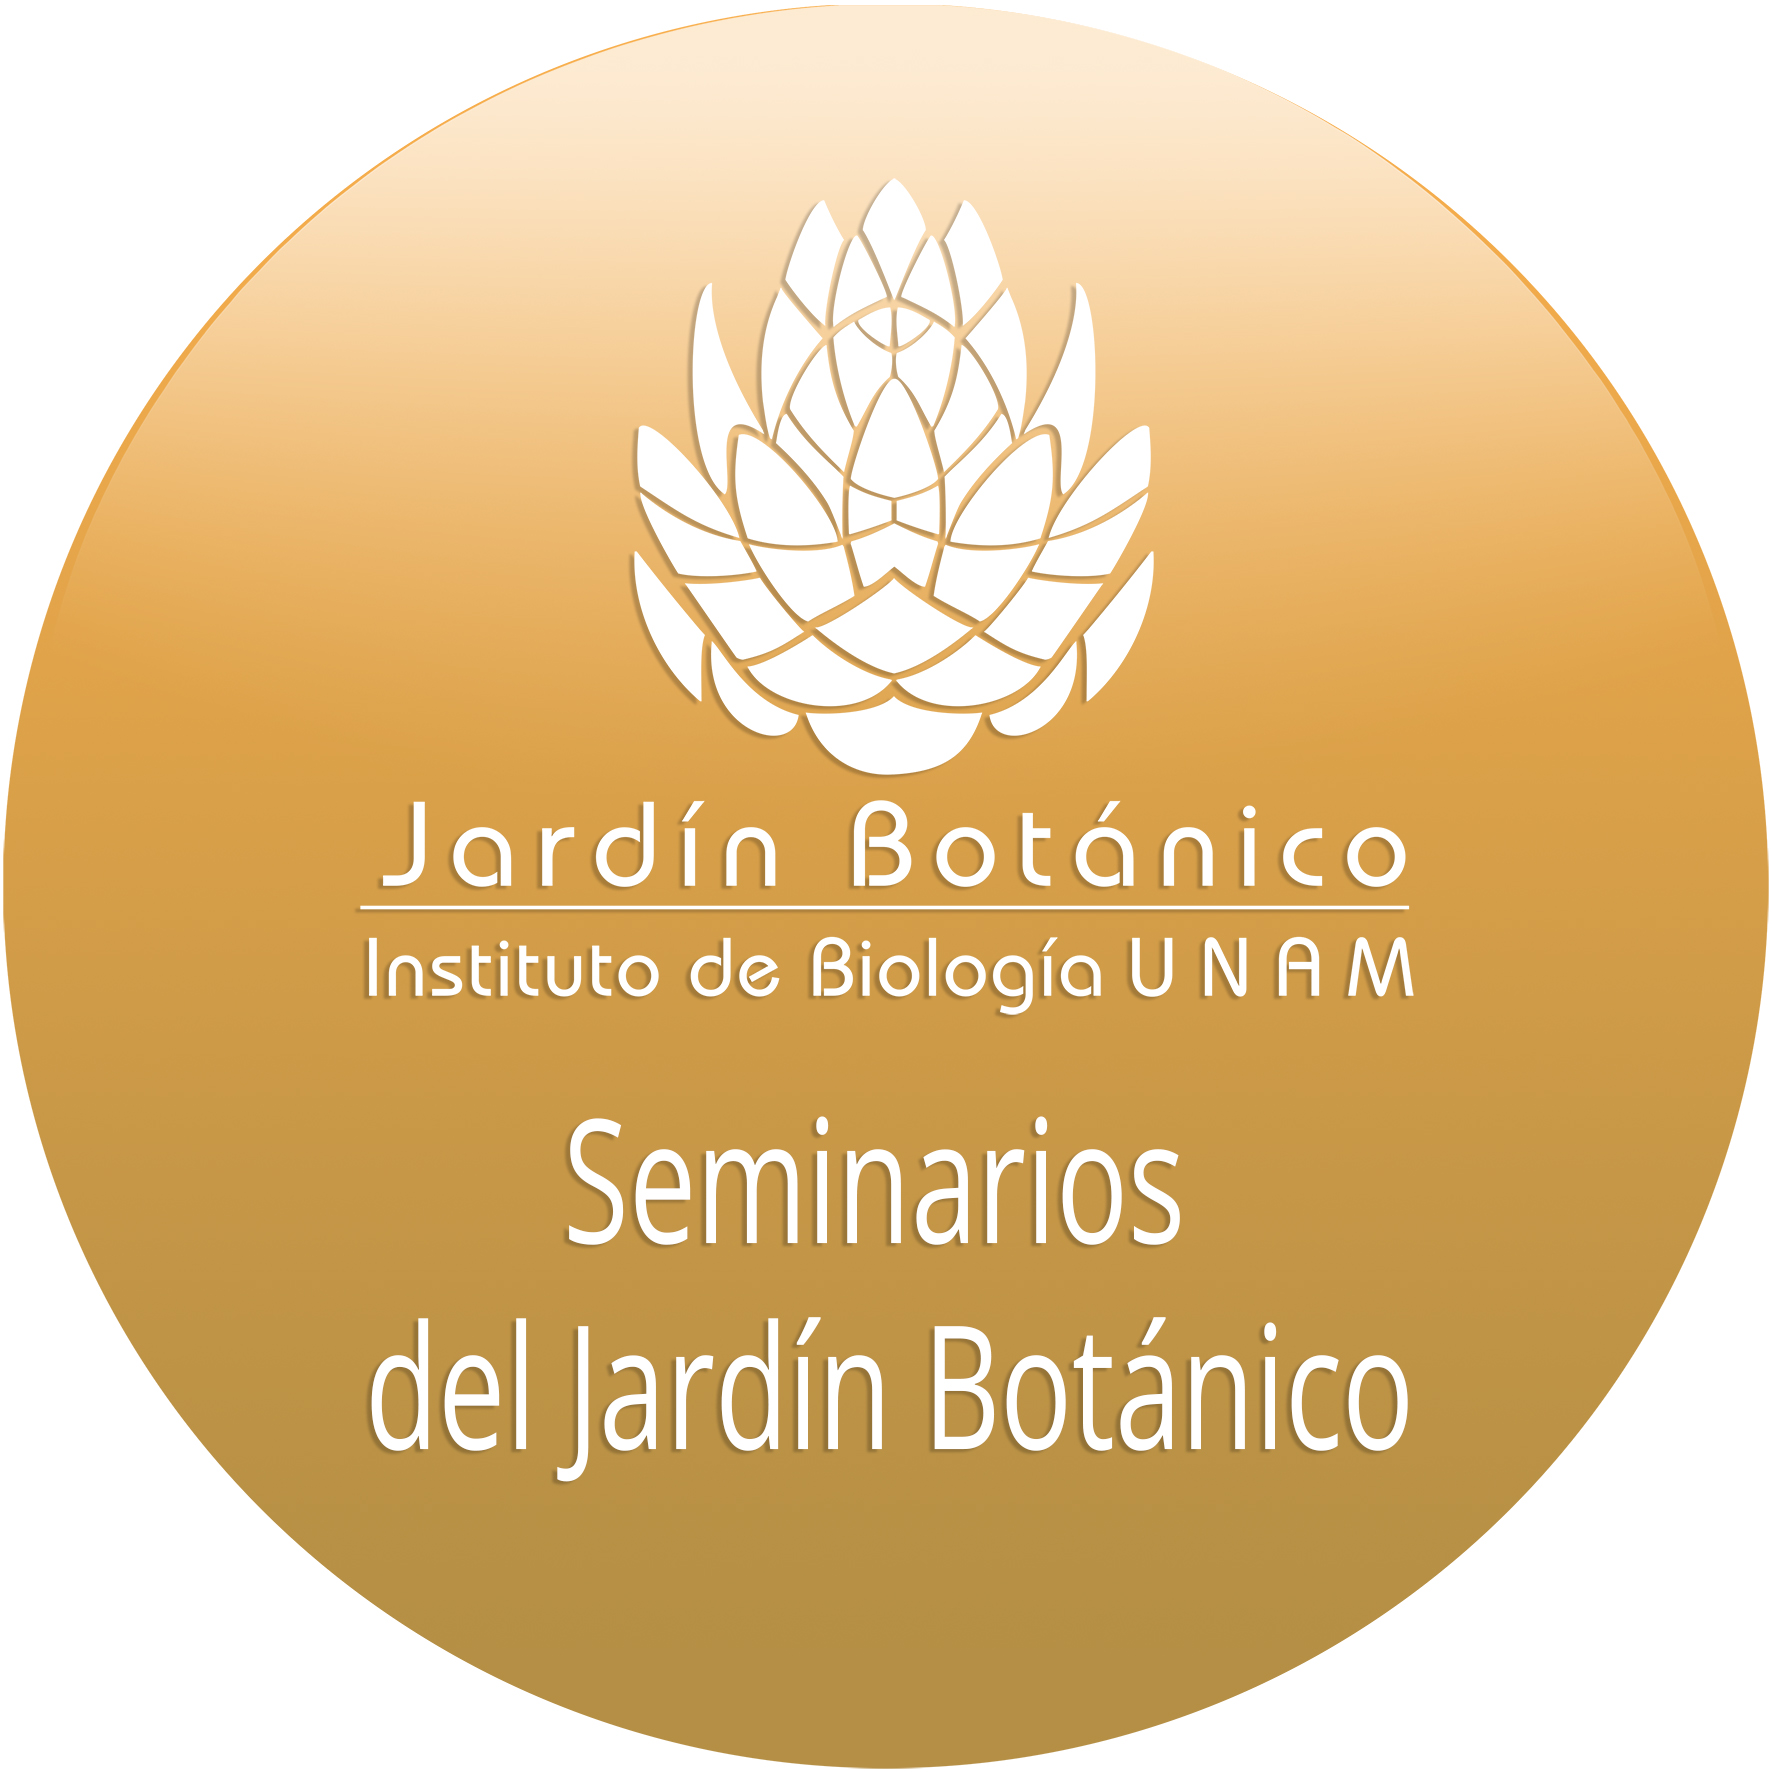 Seminarios del Jardín Botánico - Instituto de Biología, UNAM